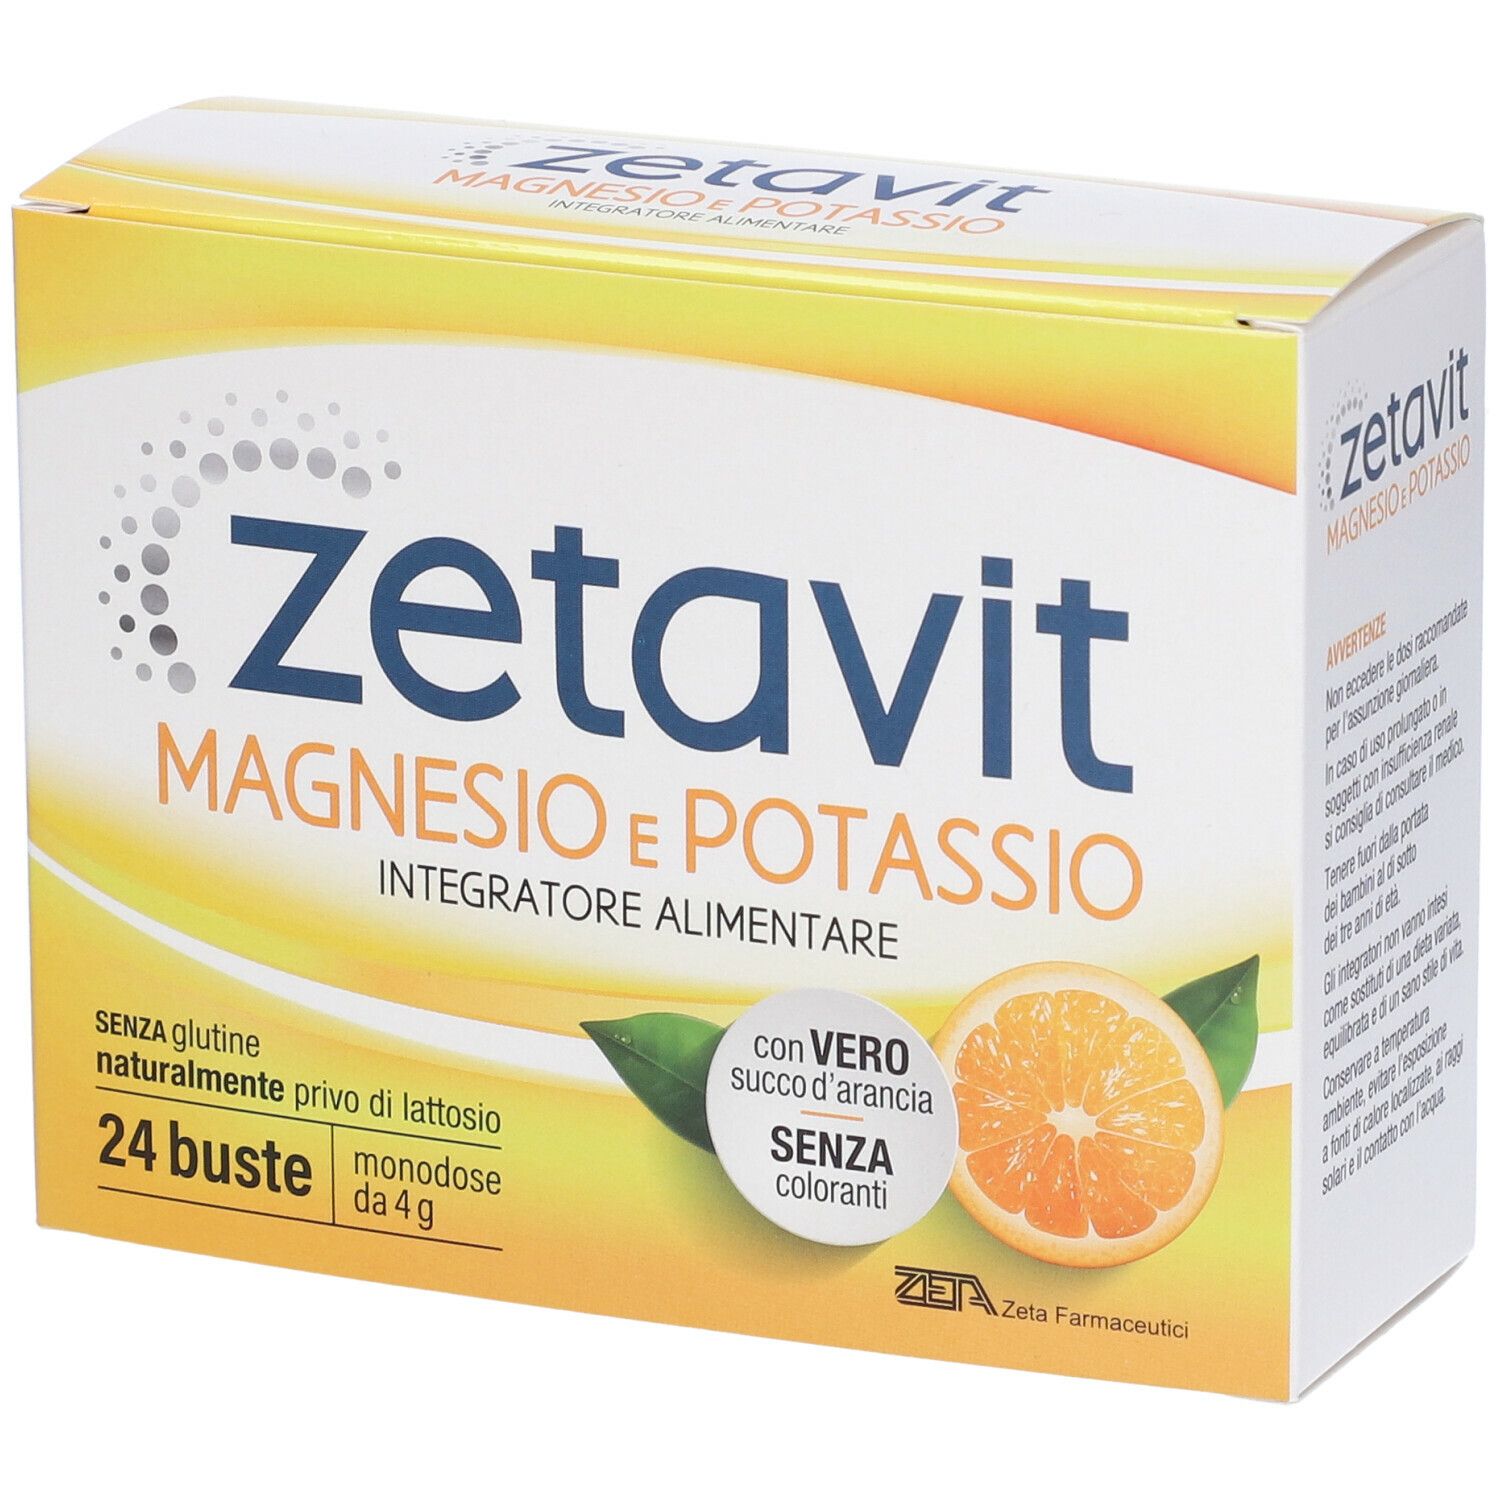 Image of Zetavit Magnesio e Potassio Integratore Alimentare